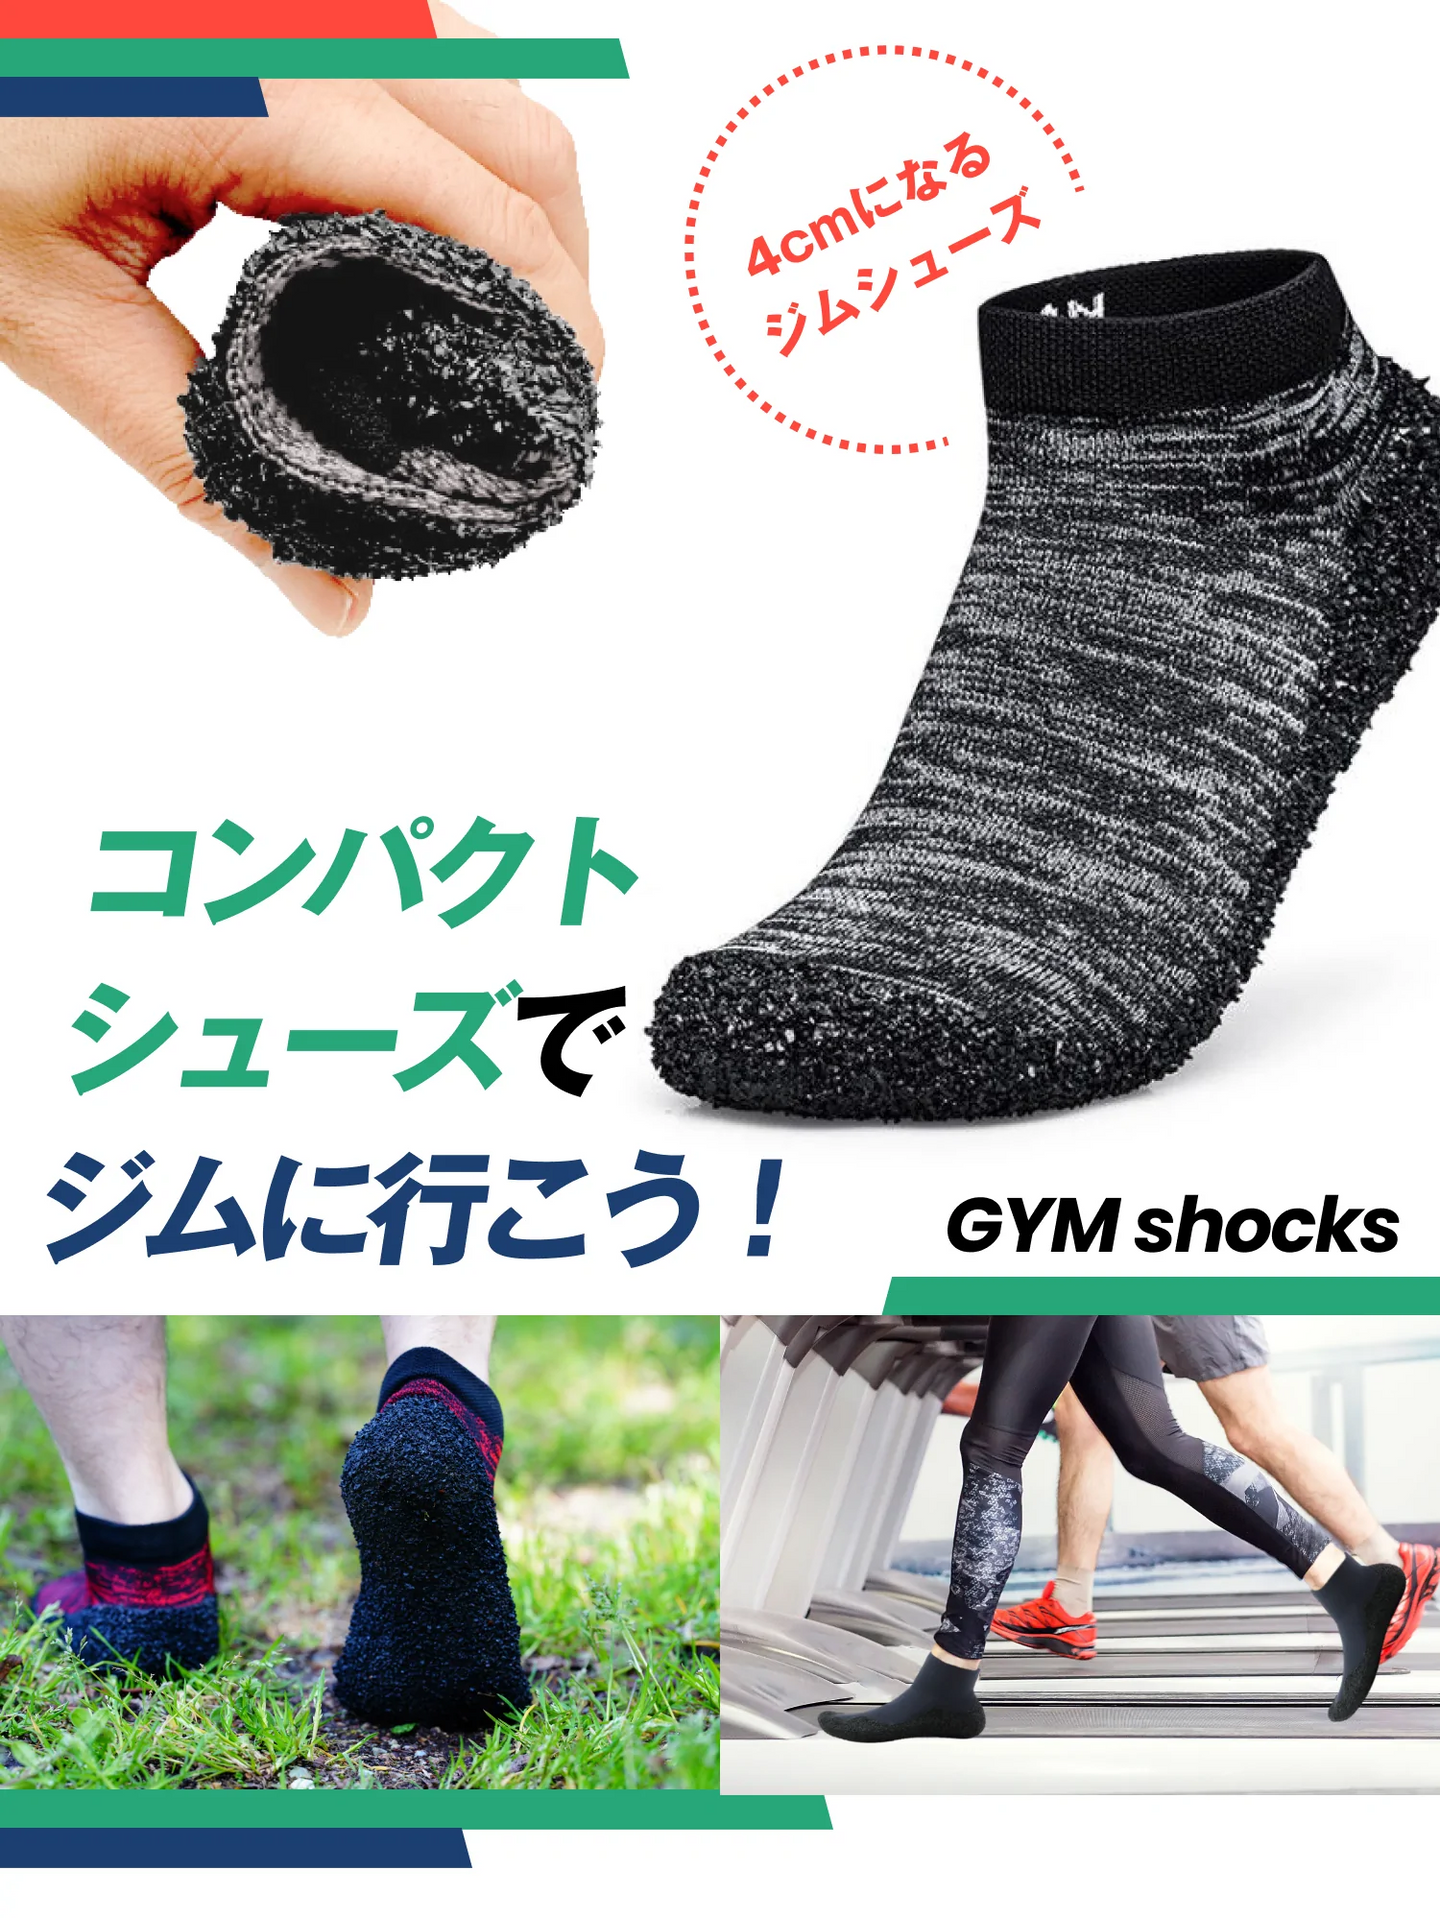 靴下と靴のいいとこどり！洗えて丈夫な ポータブルシューズ『GYM Shocks』【GS01-C】